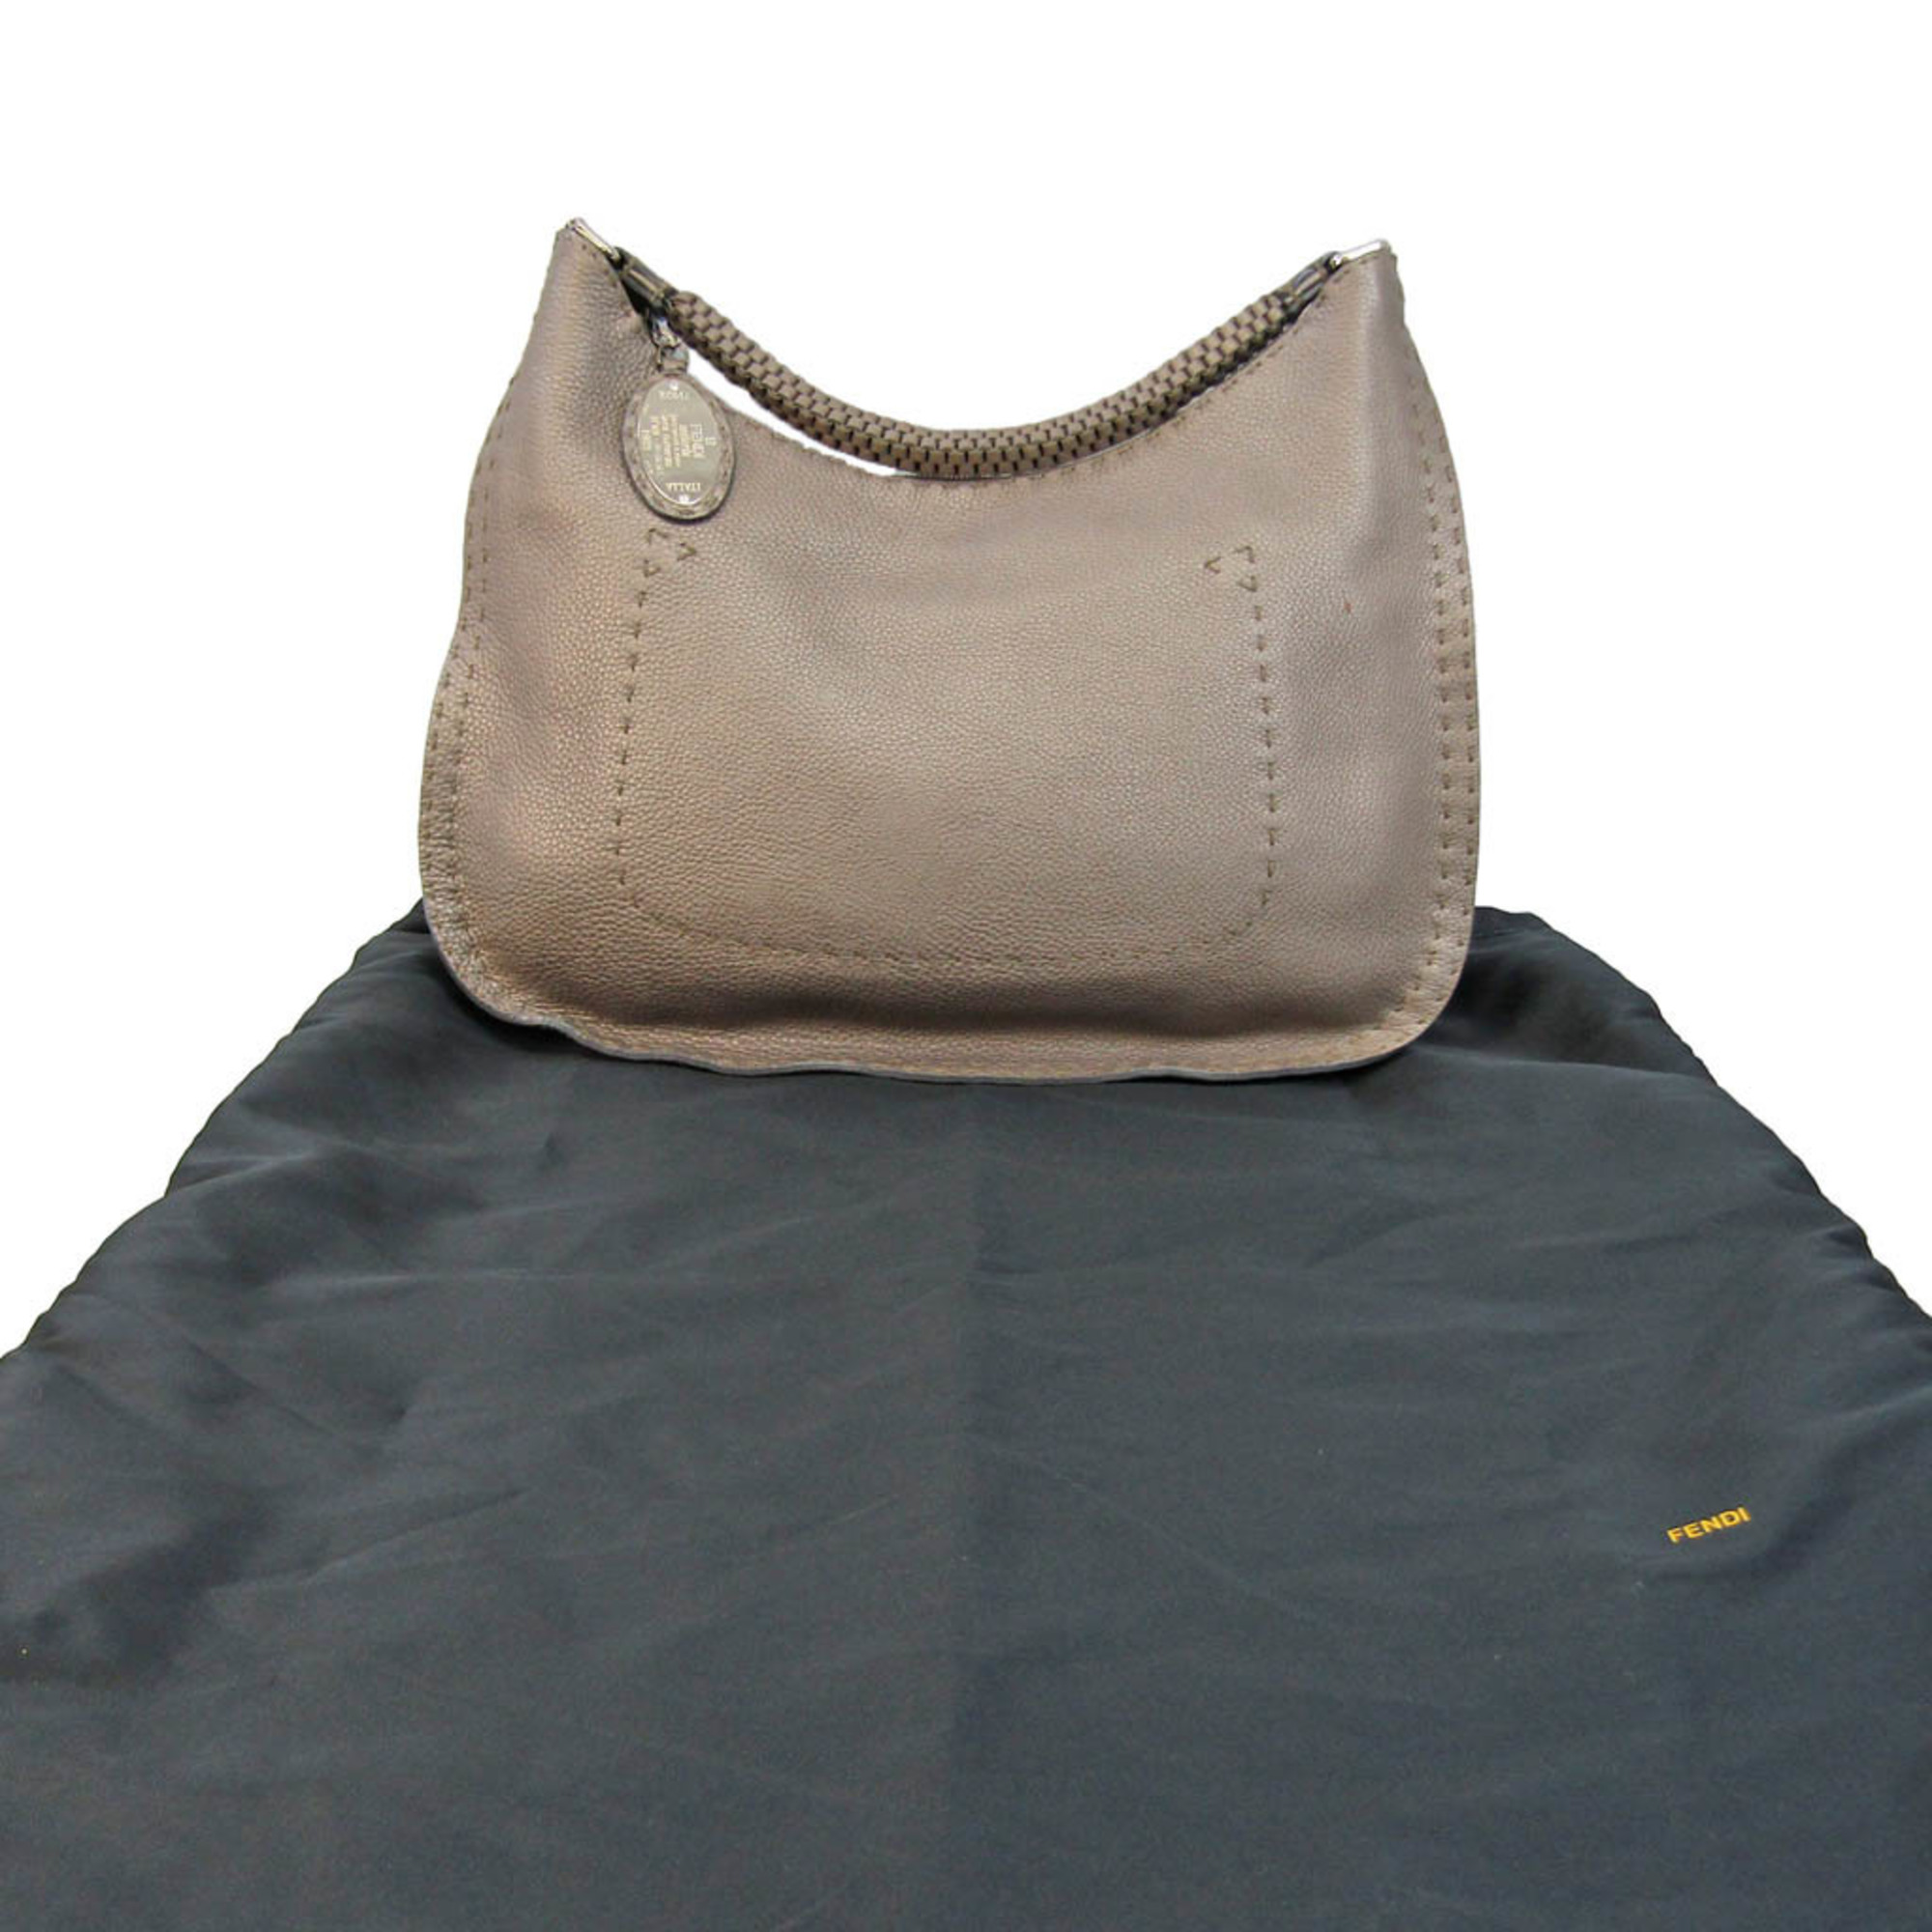 Fendi Selleria 8BR582 Women's Leather Shoulder Bag Champagne Gold